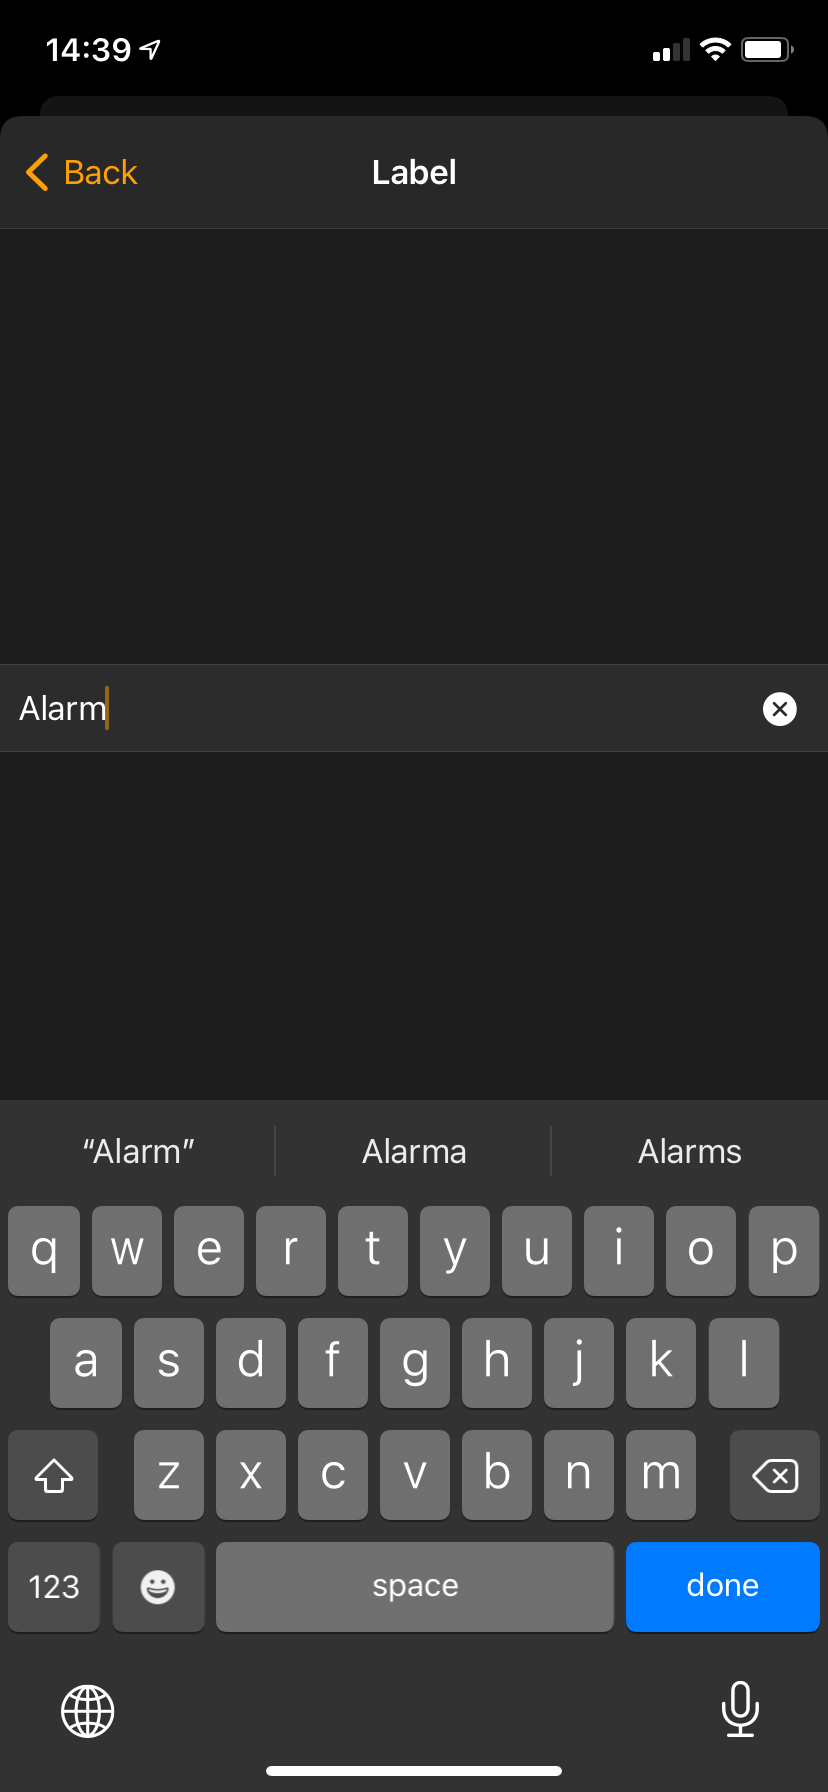 iPhone Alarm Labels